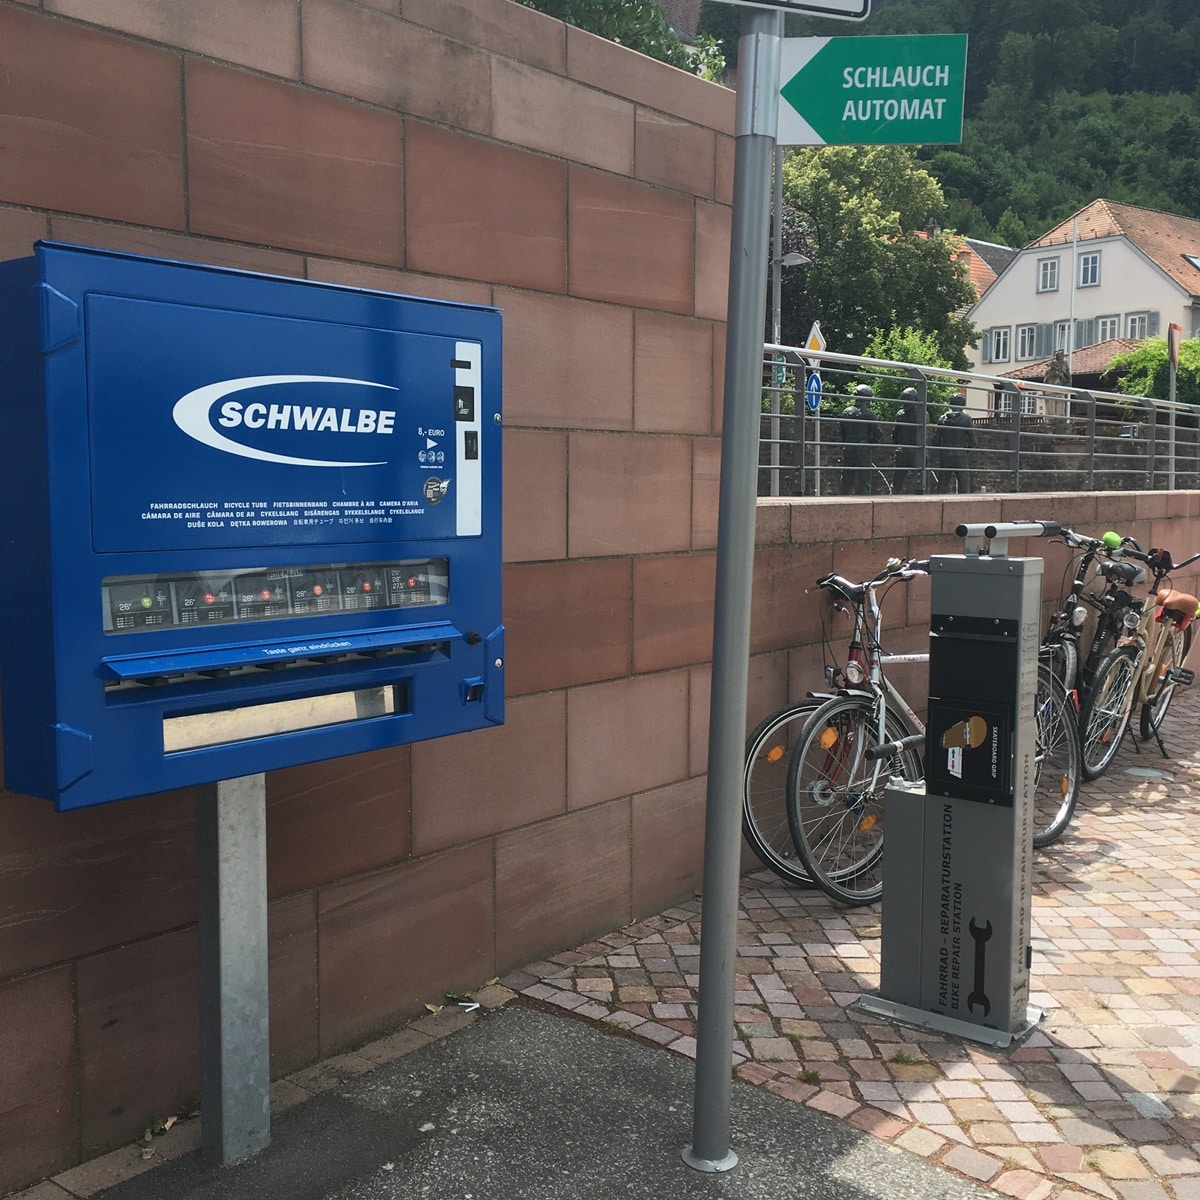 Fahrradreparaturstation und Schlauchautomat in Miltenberg am MainRadweg